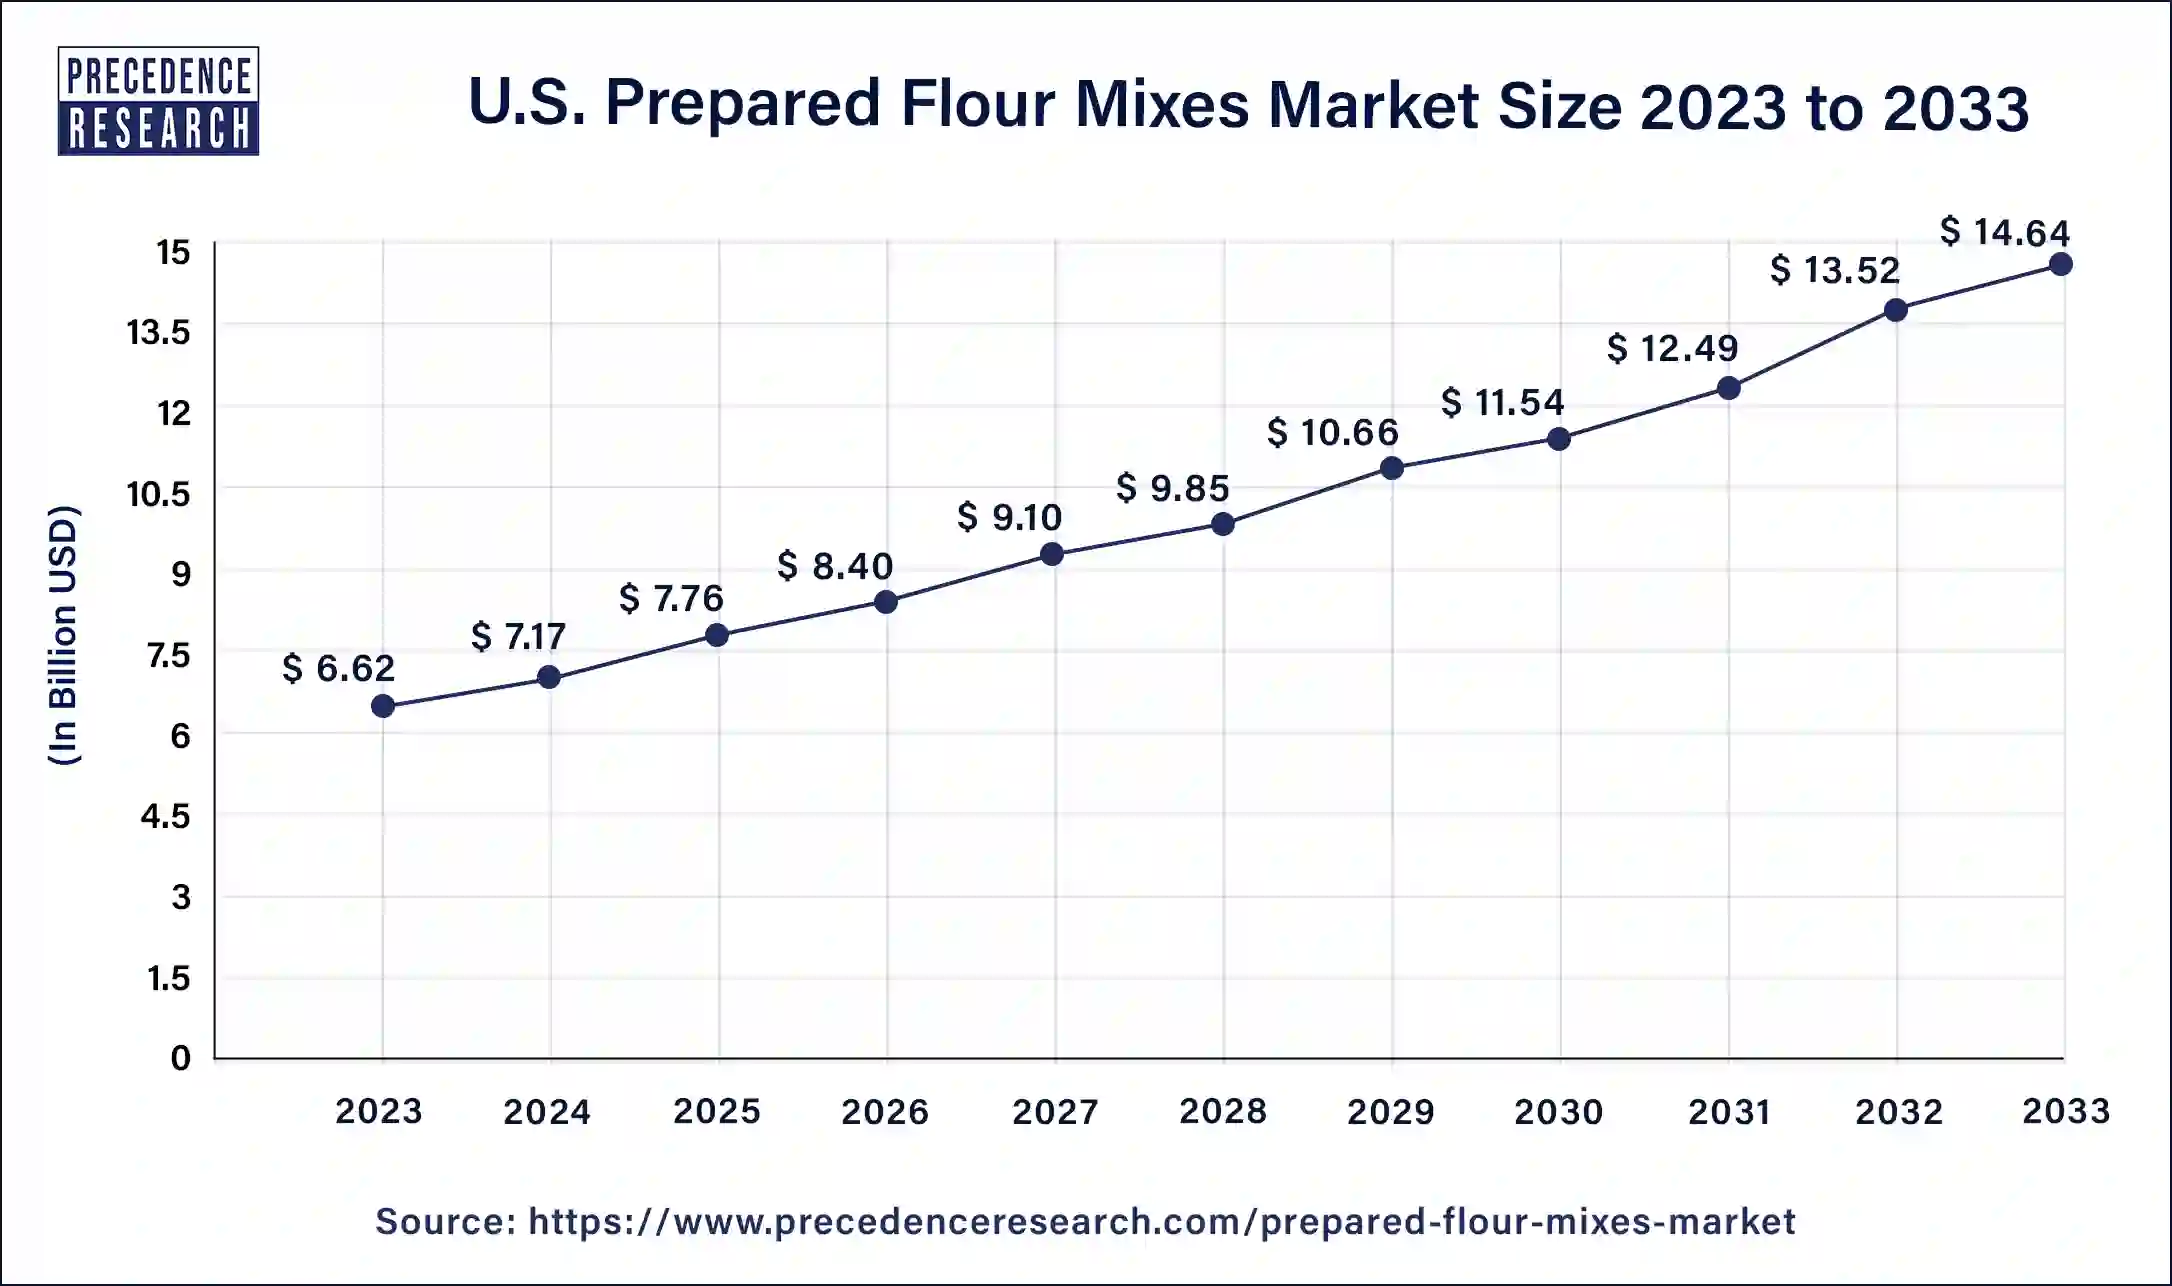 U.S. Prepared Flour Mixes Market Size 2024 to 2033